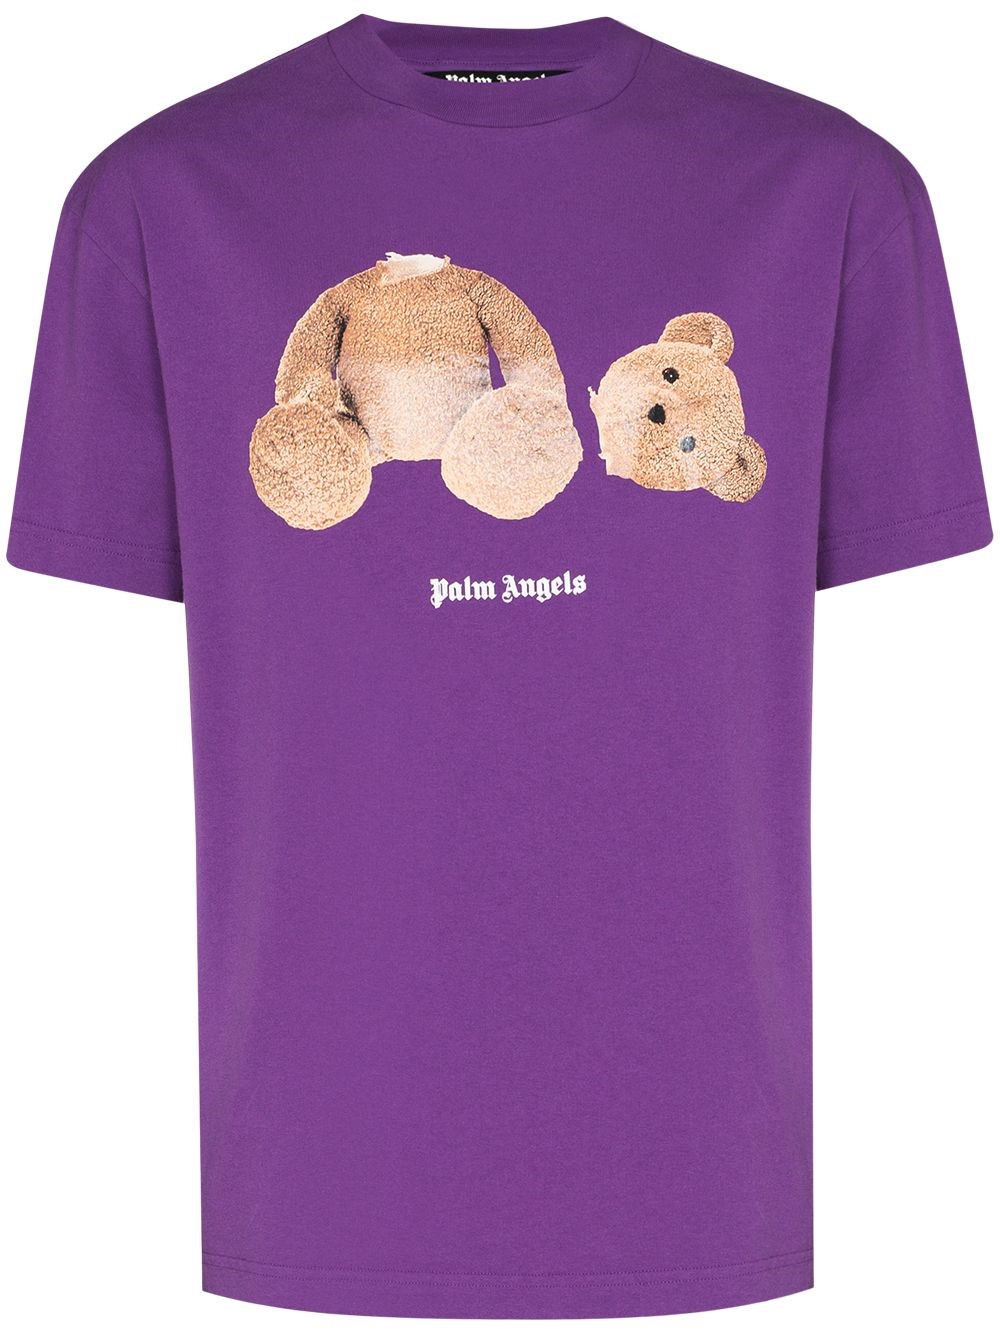 palm angels teddy bear shirt